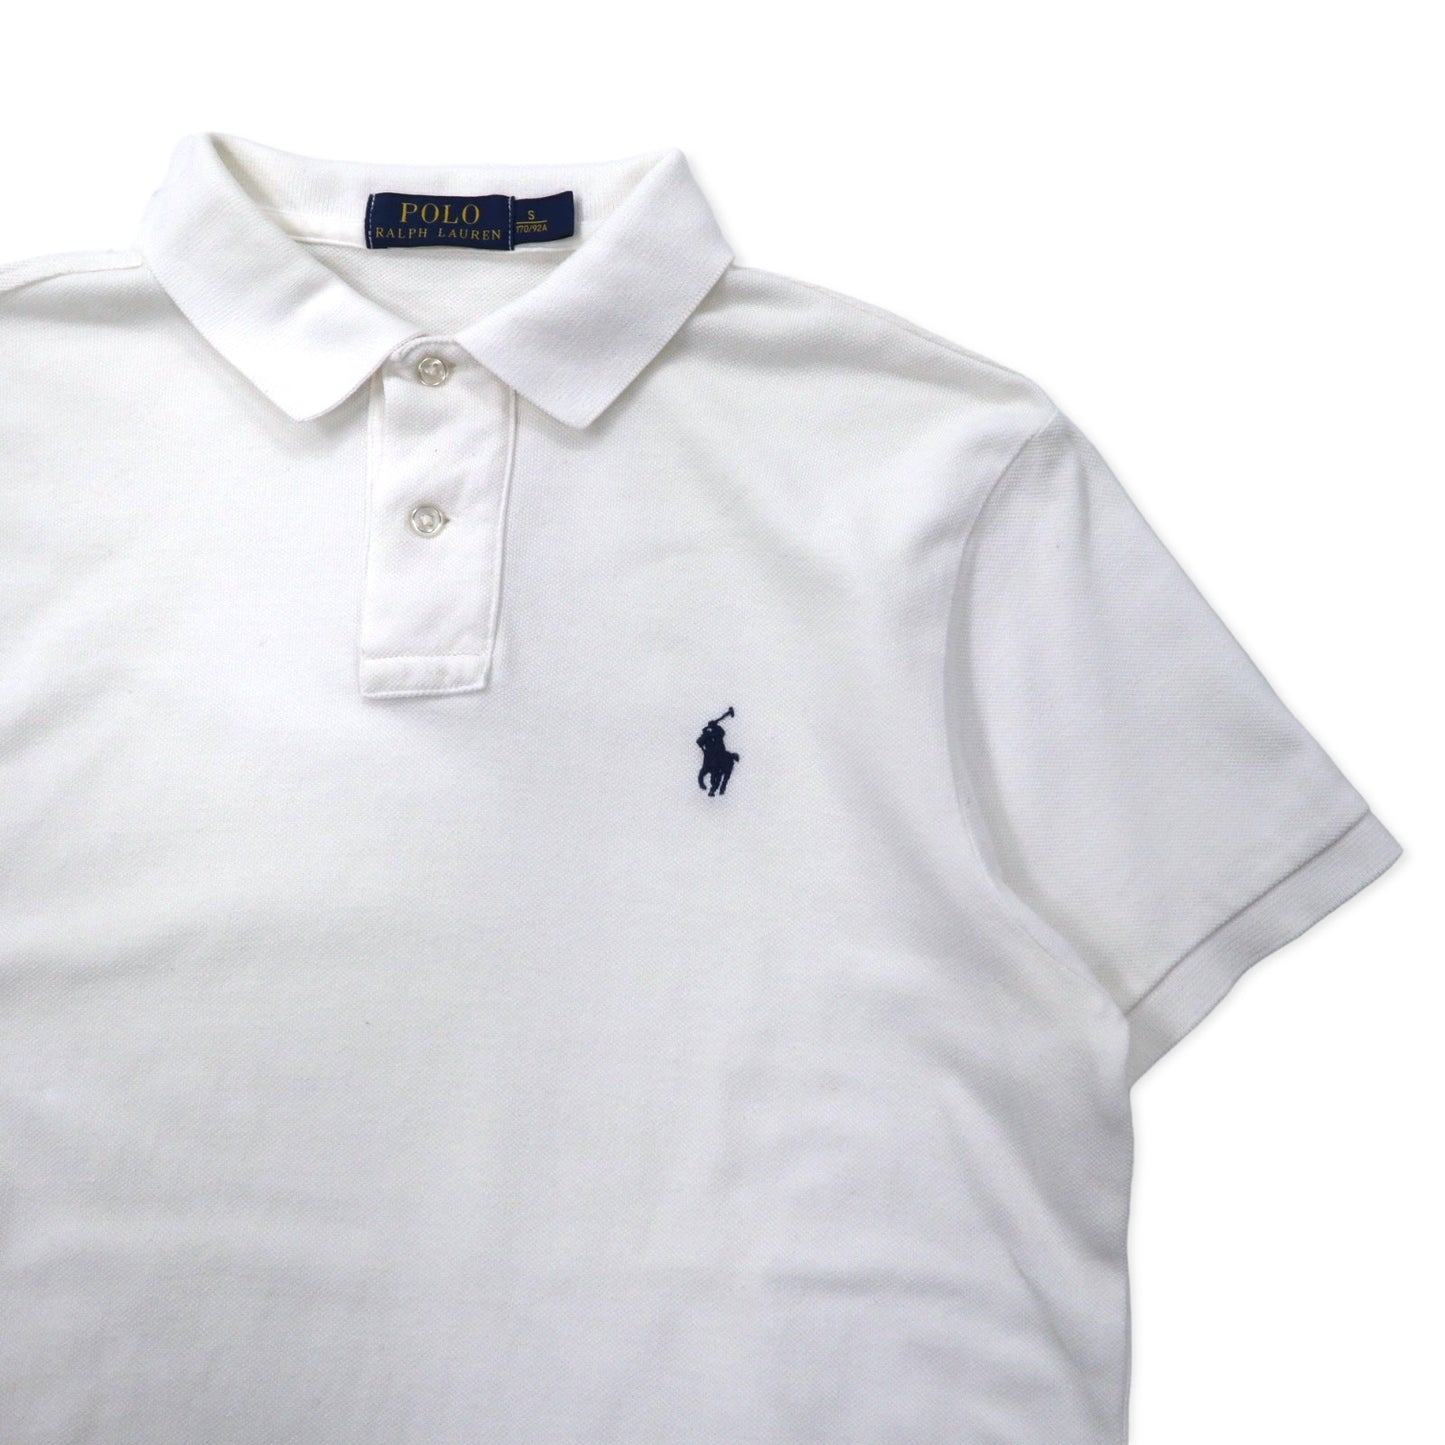 POLO RALPH LAUREN ポロシャツ 170 ホワイト コットン 鹿の子 スモールポニー刺繍